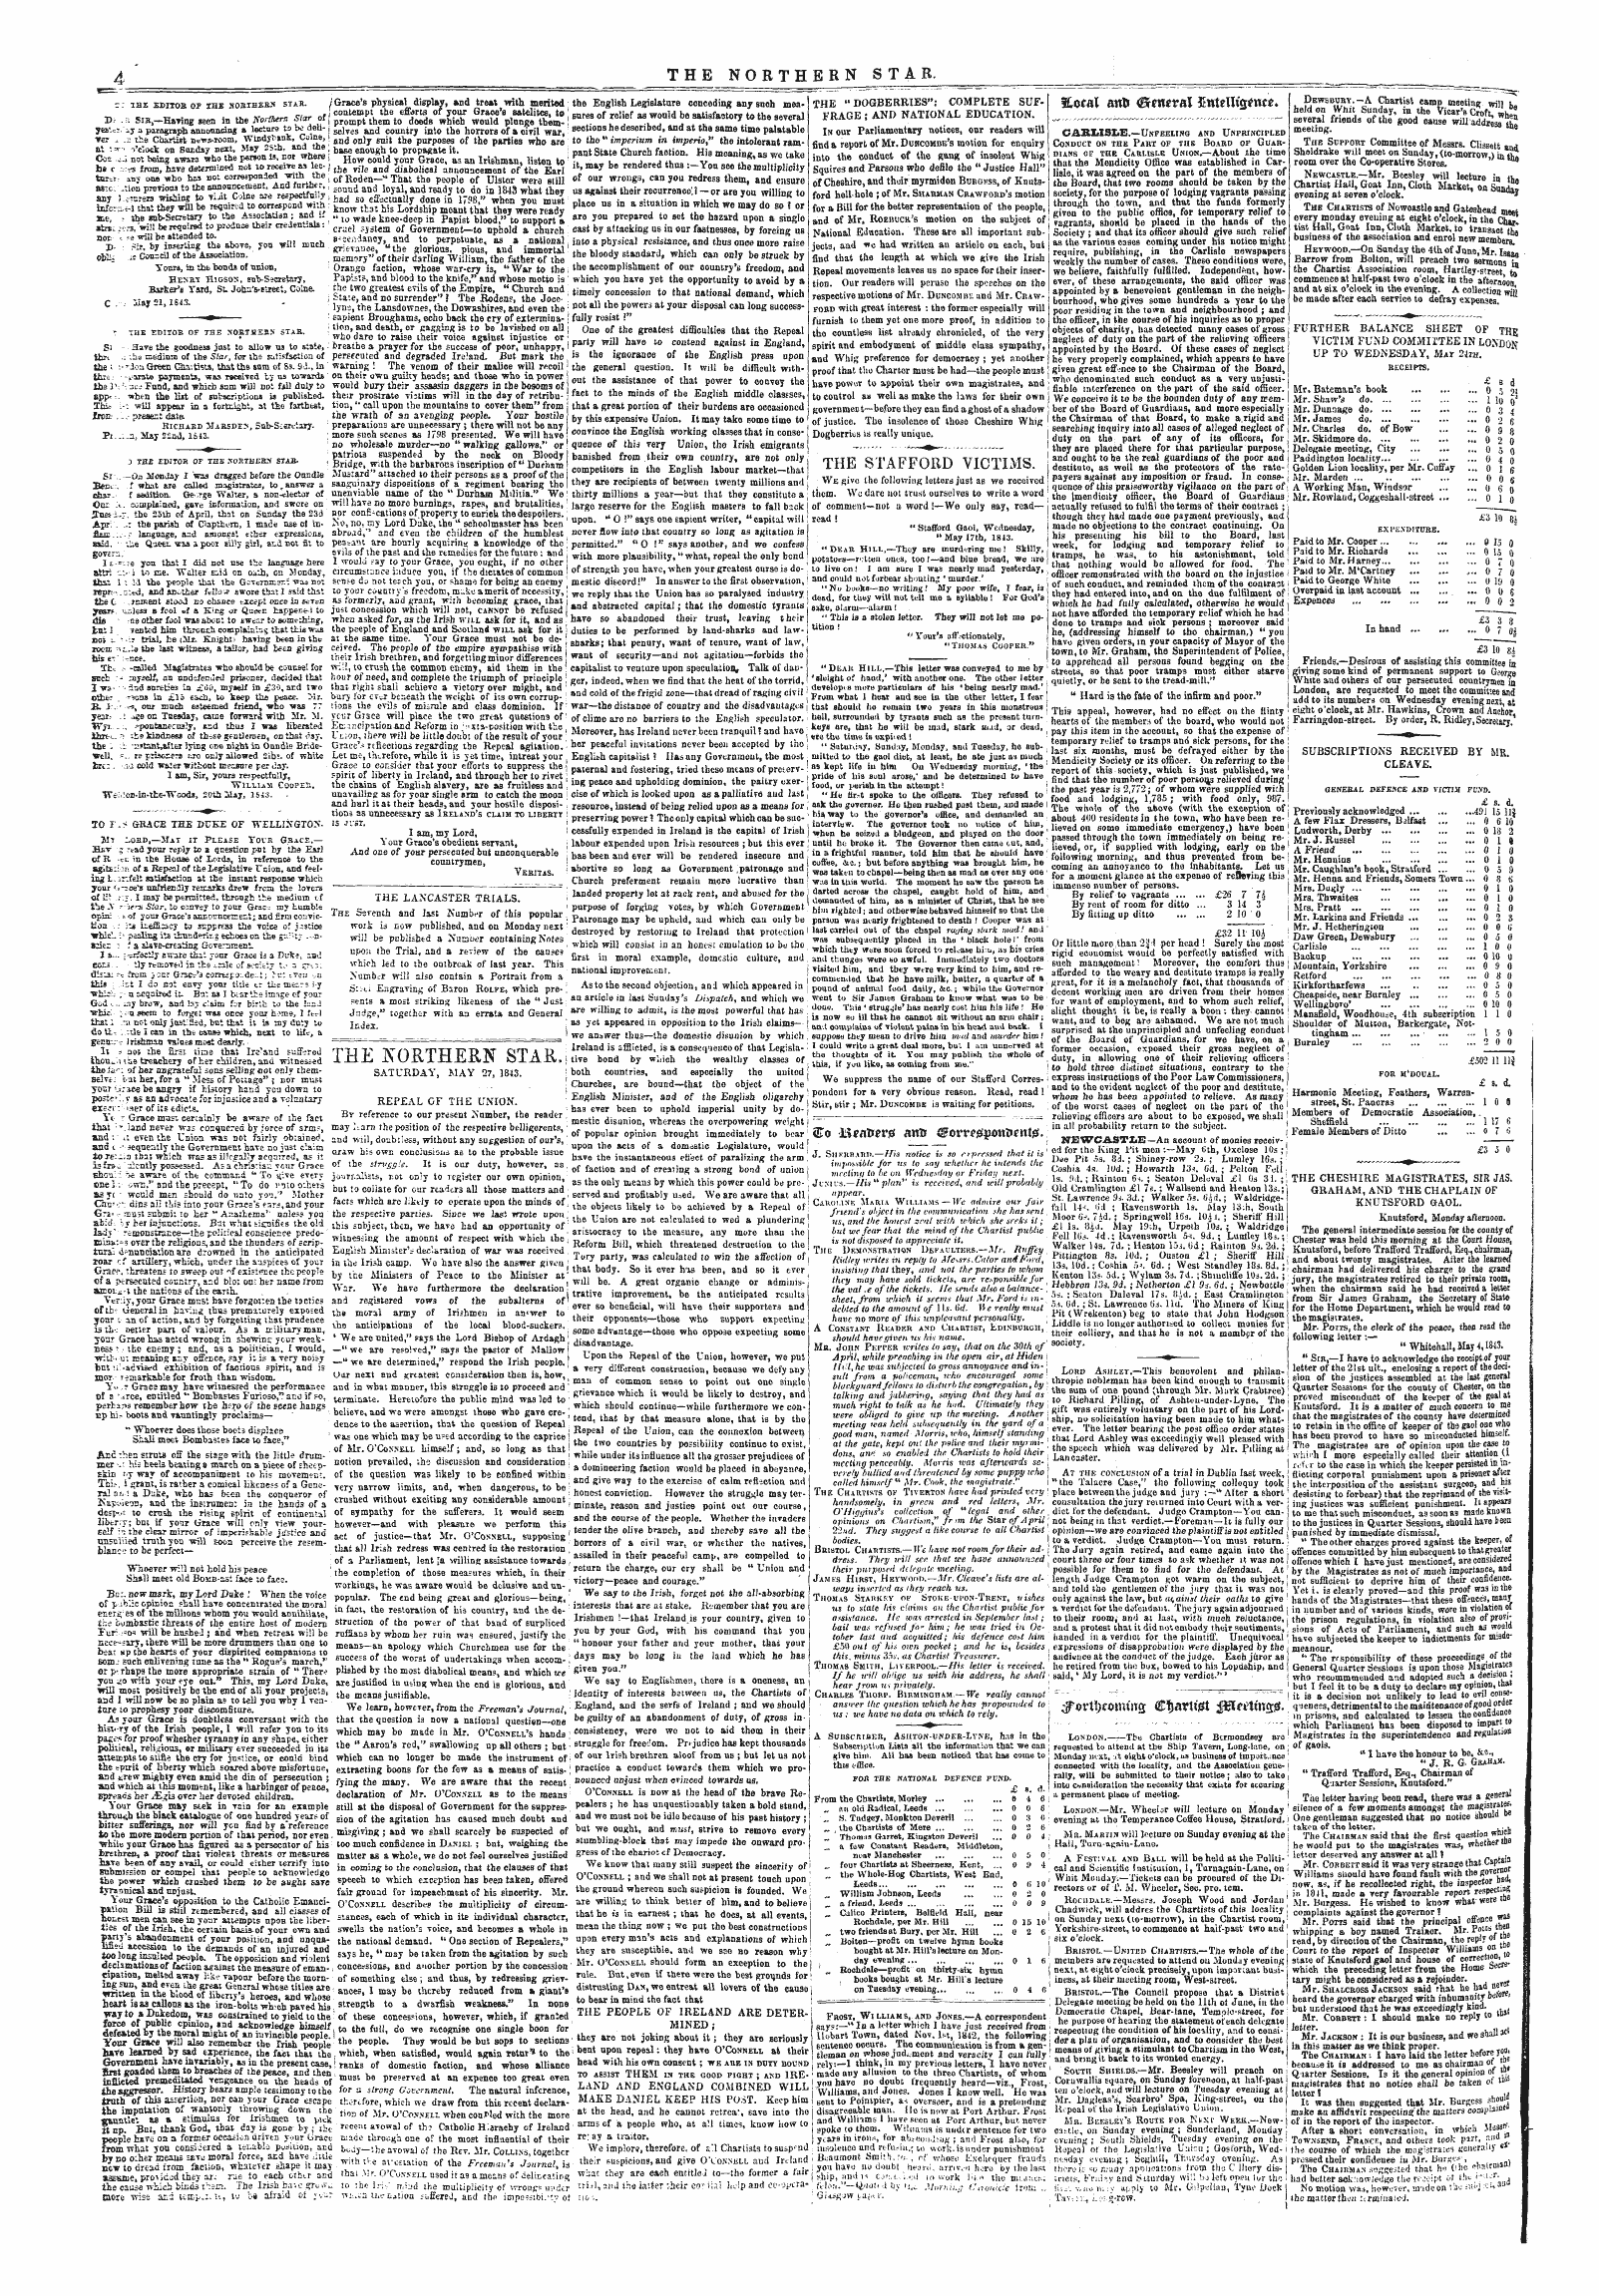 Northern Star (1837-1852): jS F Y, 4th edition - #Ovtl)Comut2 Cfjarttjsst Jeiwtmcrjs